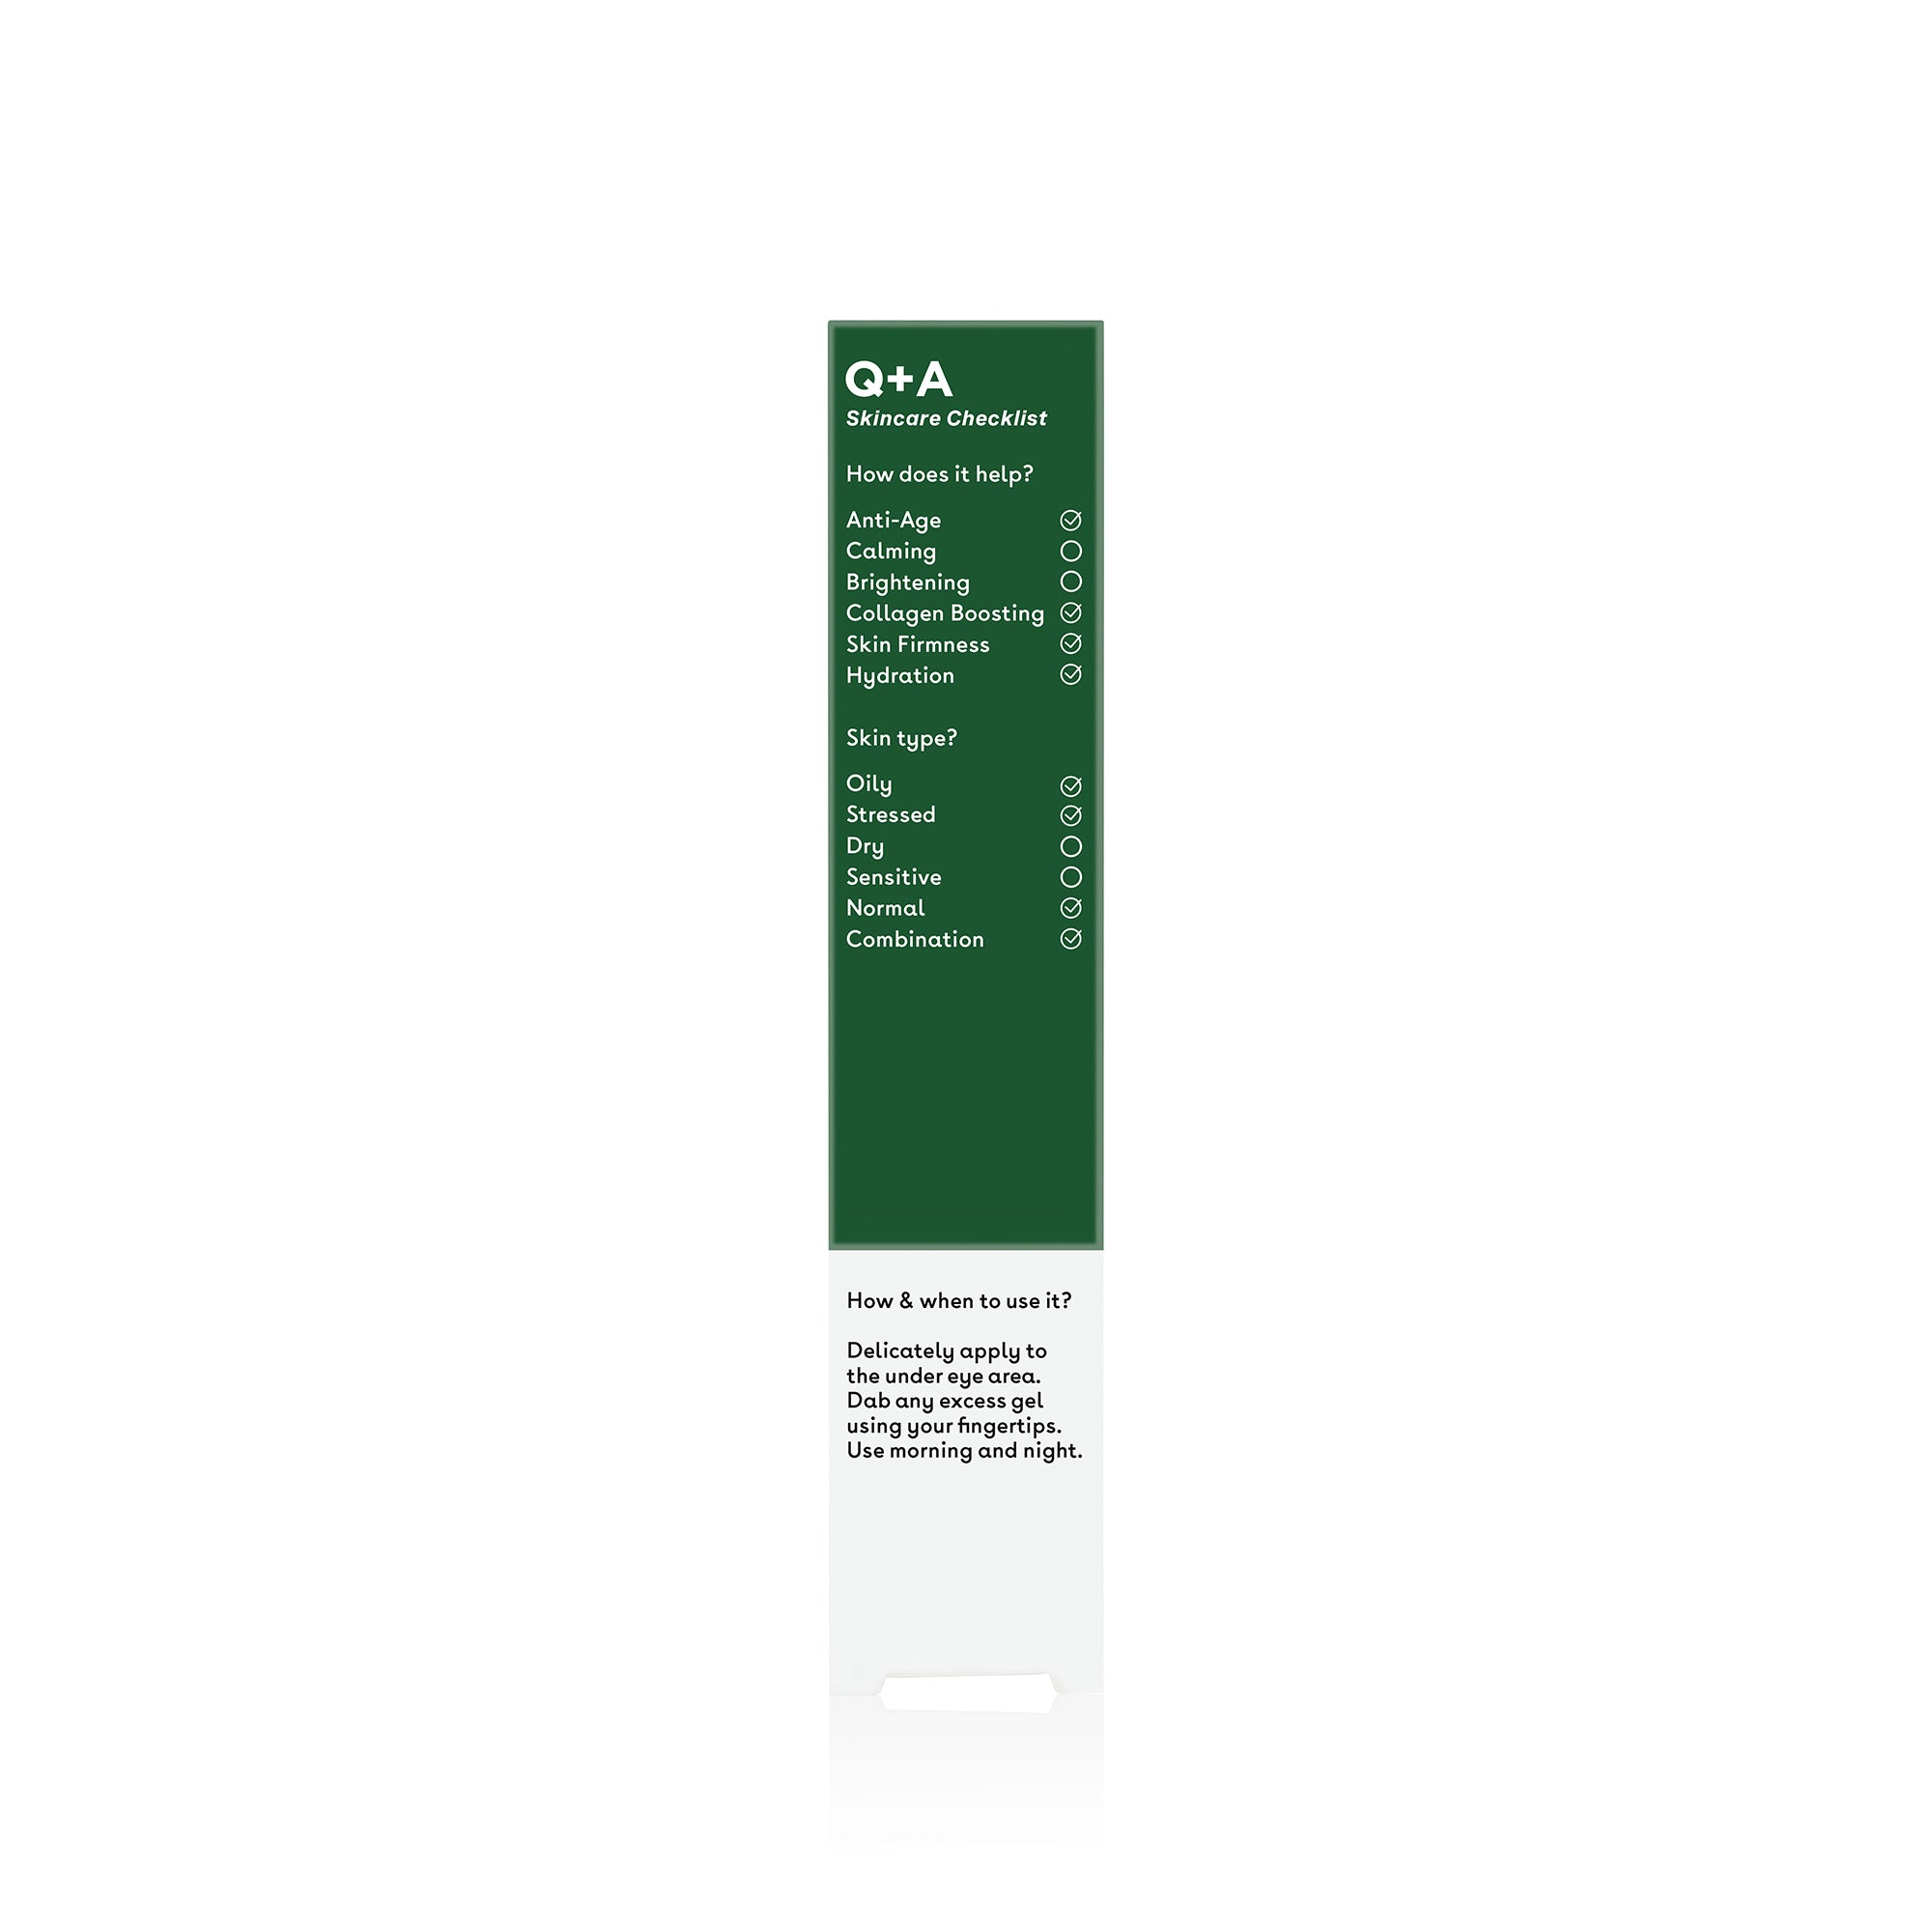 Q+A Seaweed Peptide Eye Gel checklist